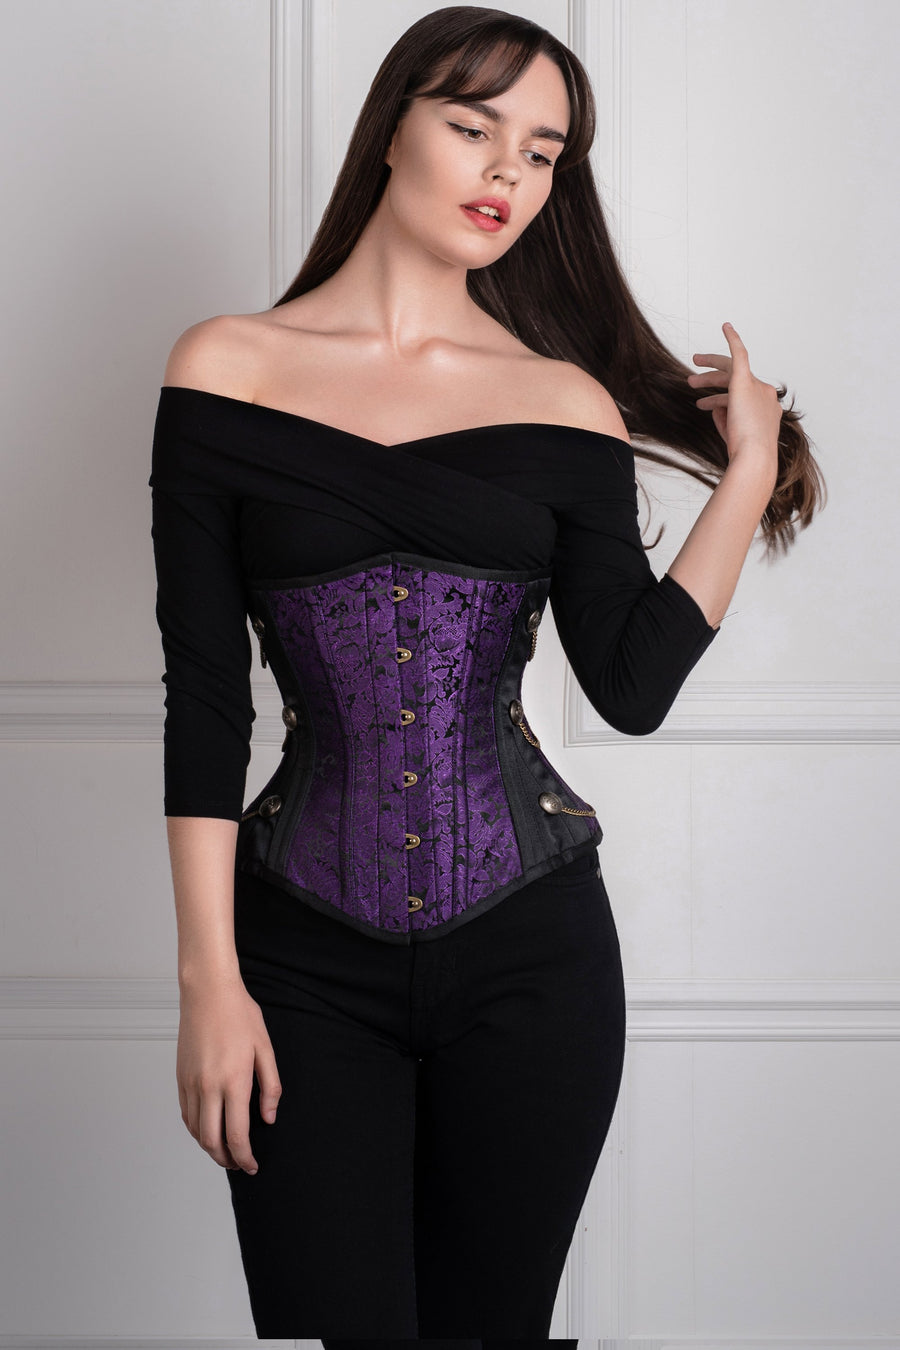 https://corset-story-ca.com/cdn/shop/products/WTS500_900x.jpg?v=1668108437